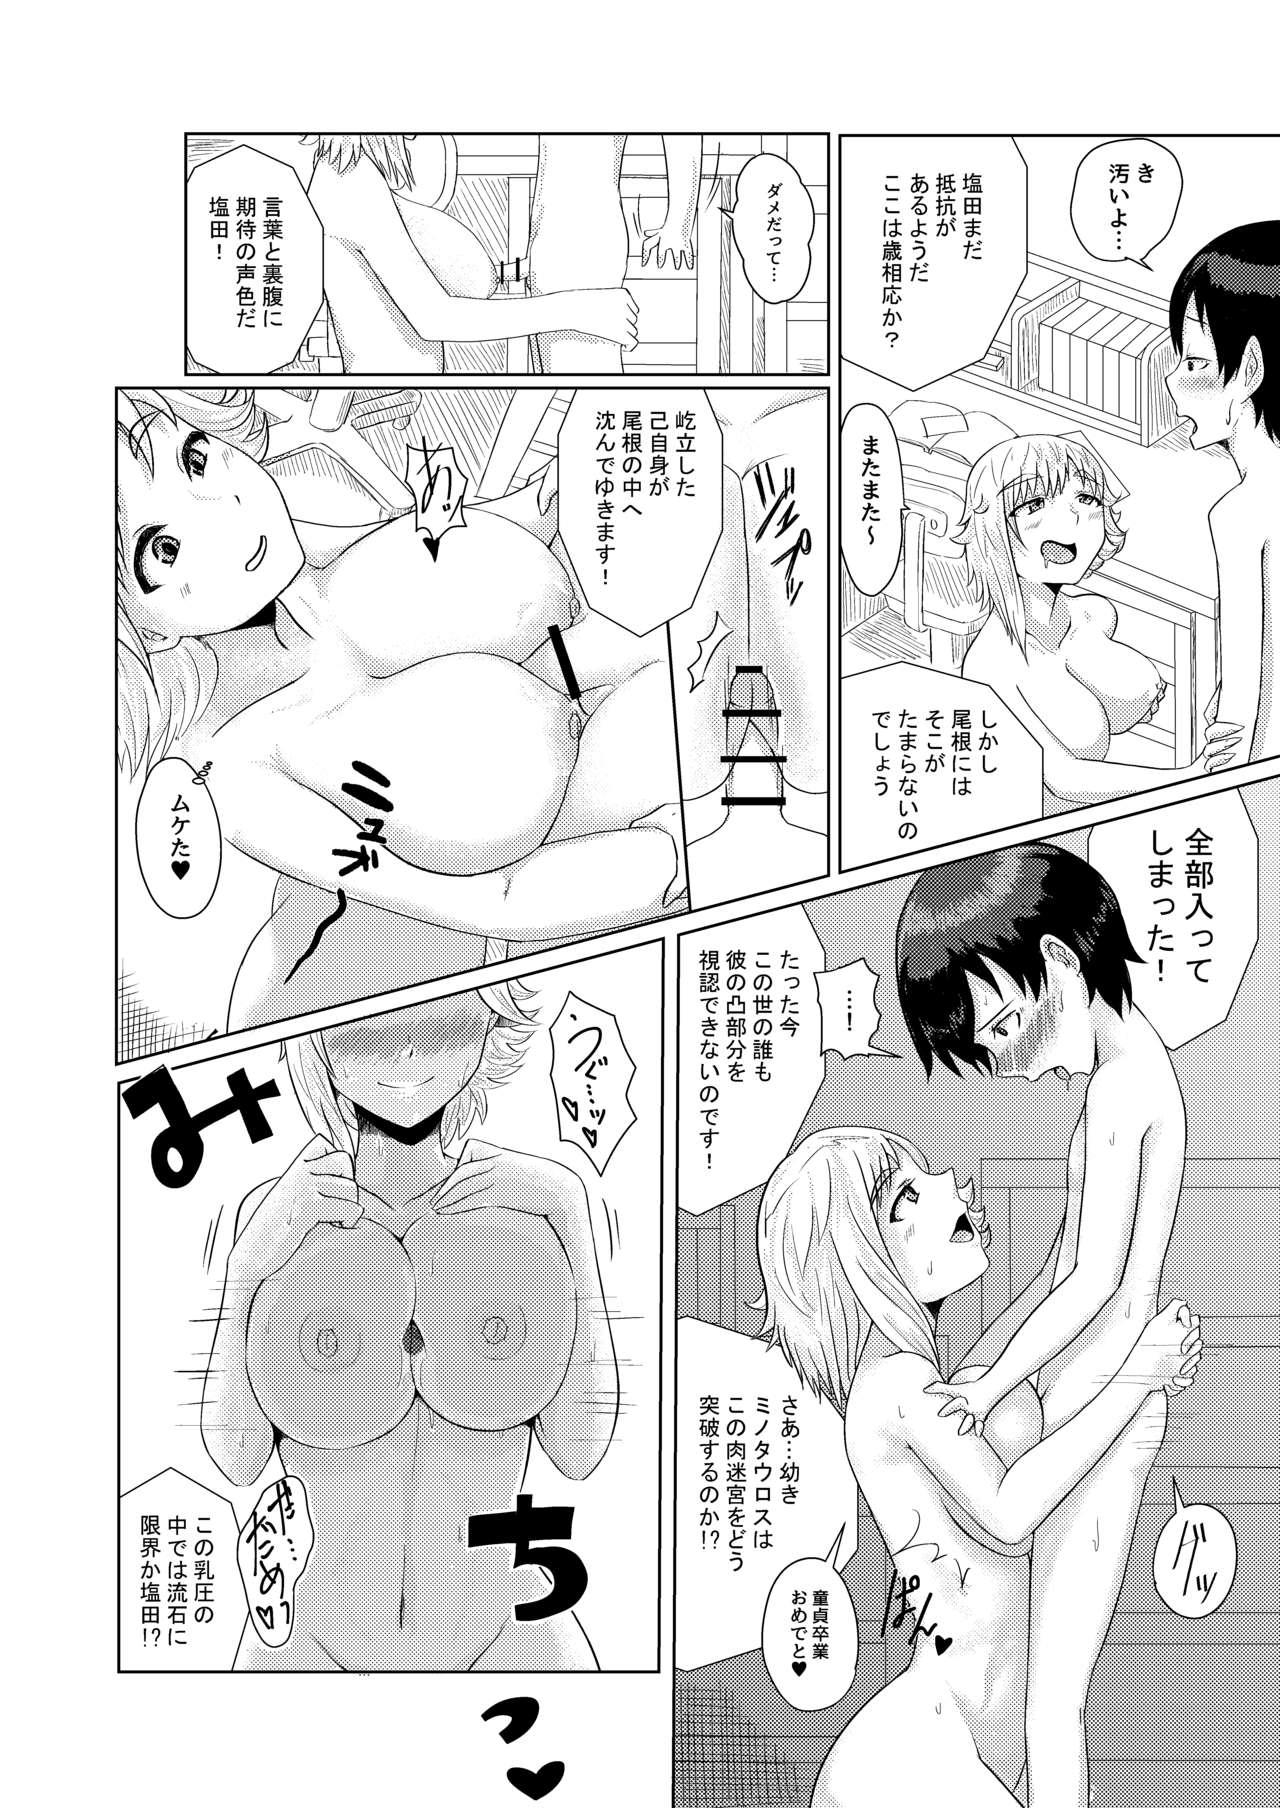 Shinnen Oneshota Manga 6